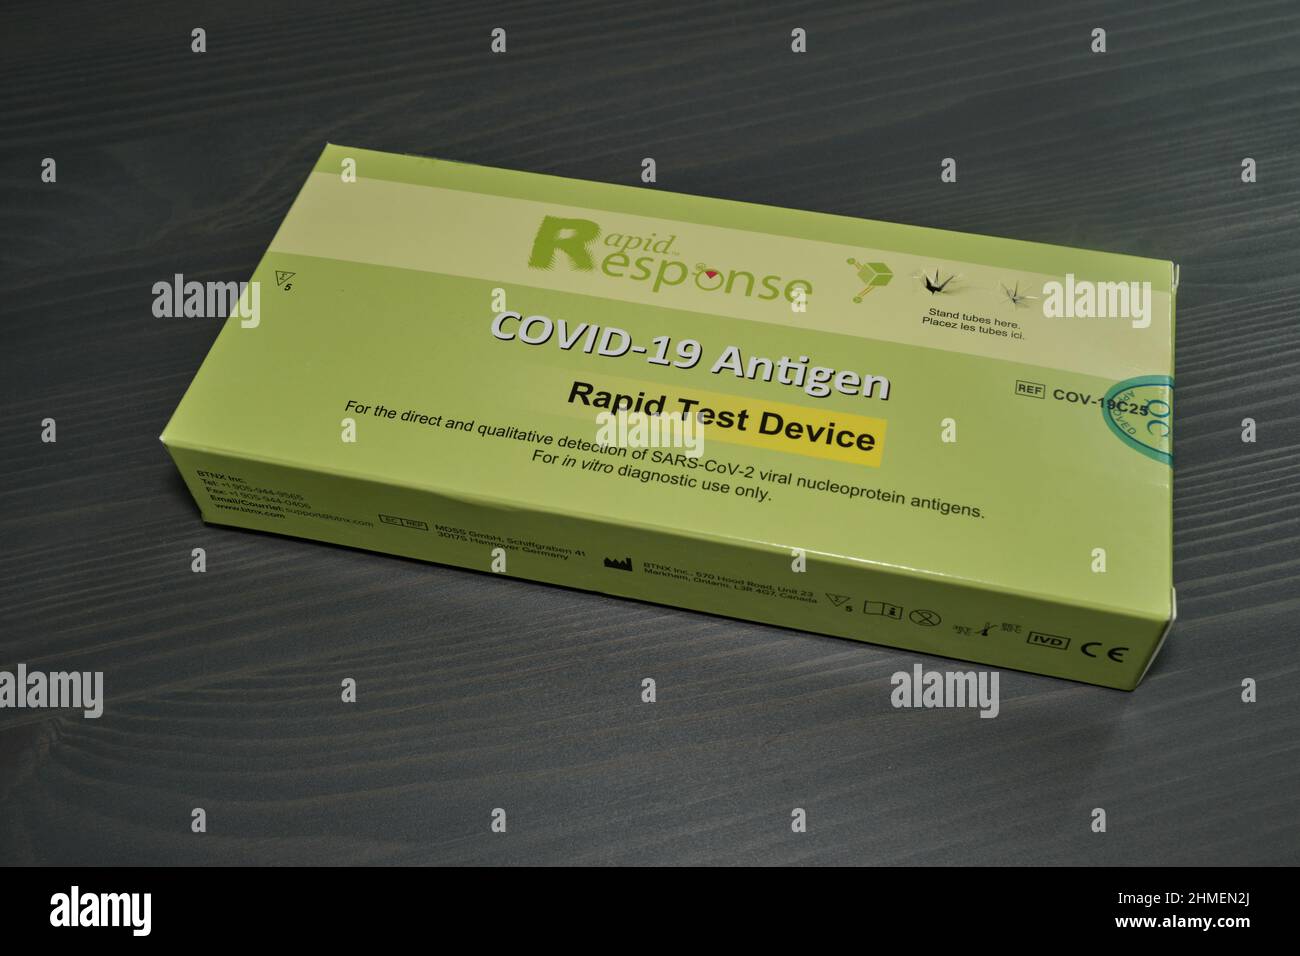 Ottawa, Ontario, Canada - 9 febbraio 2022: La scatola per un dispositivo di test rapido dell'antigene COVID-19 a risposta rapida si trova su un tavolo di legno. Foto Stock